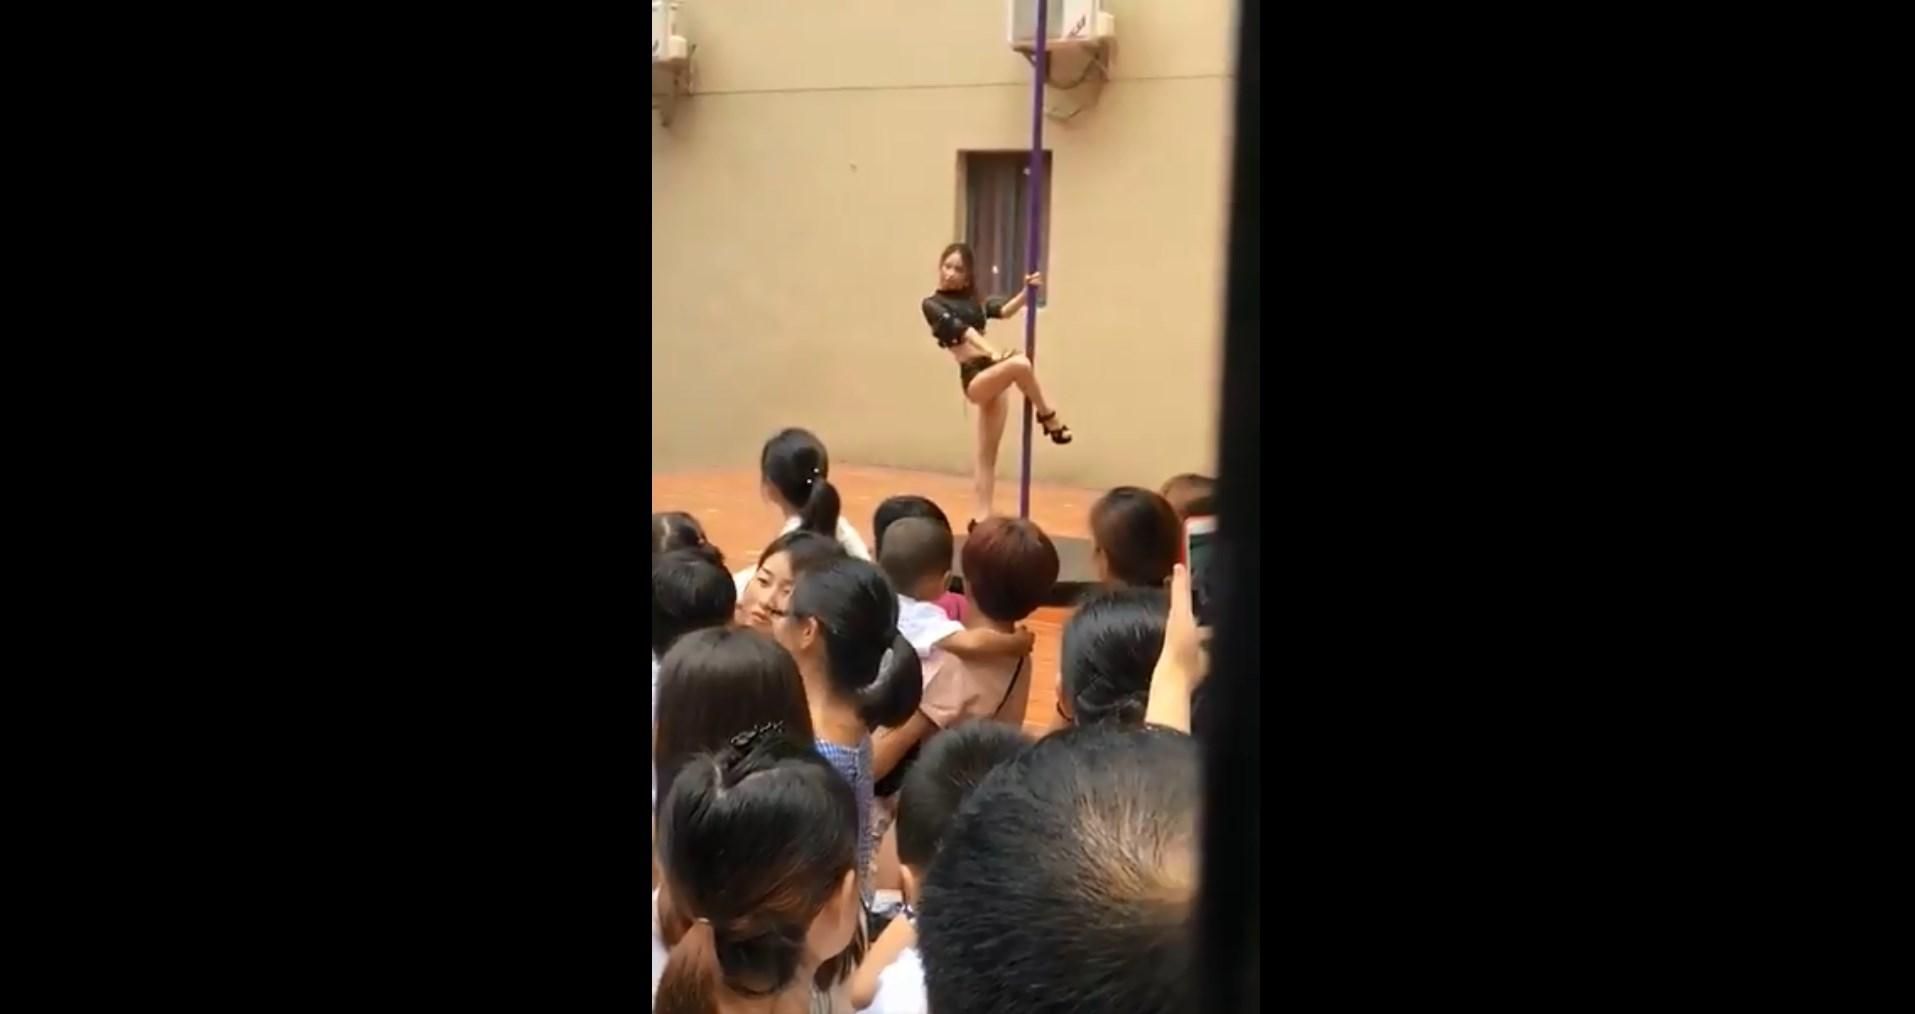 1 сентября малышей в китайском детском саду развлекала девушка на пилоне: видео